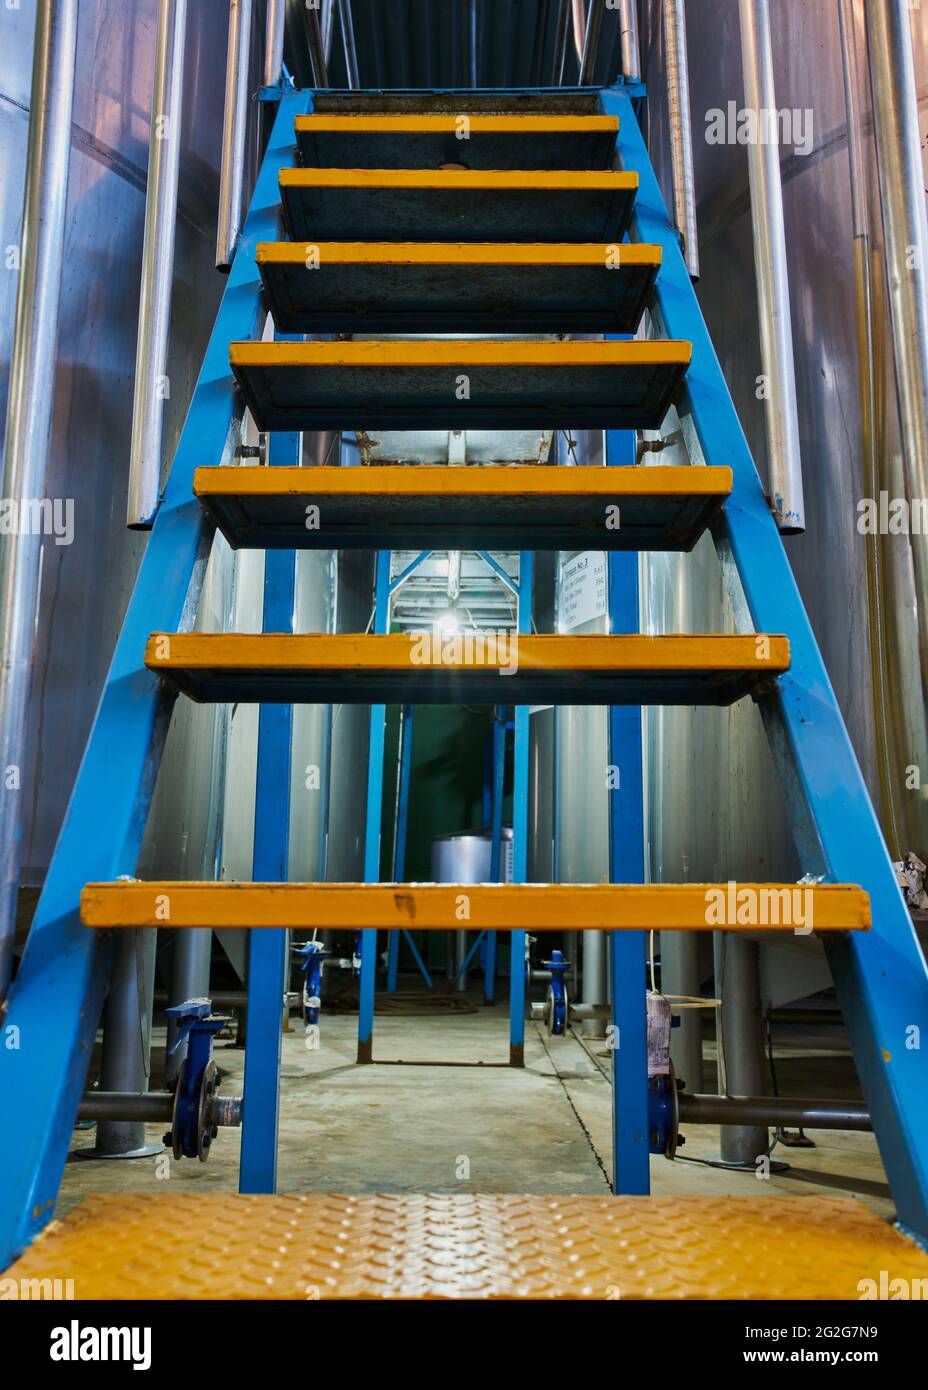 Escalera industrial de metal azul y amarillo para una fábrica de tequila Foto de stock